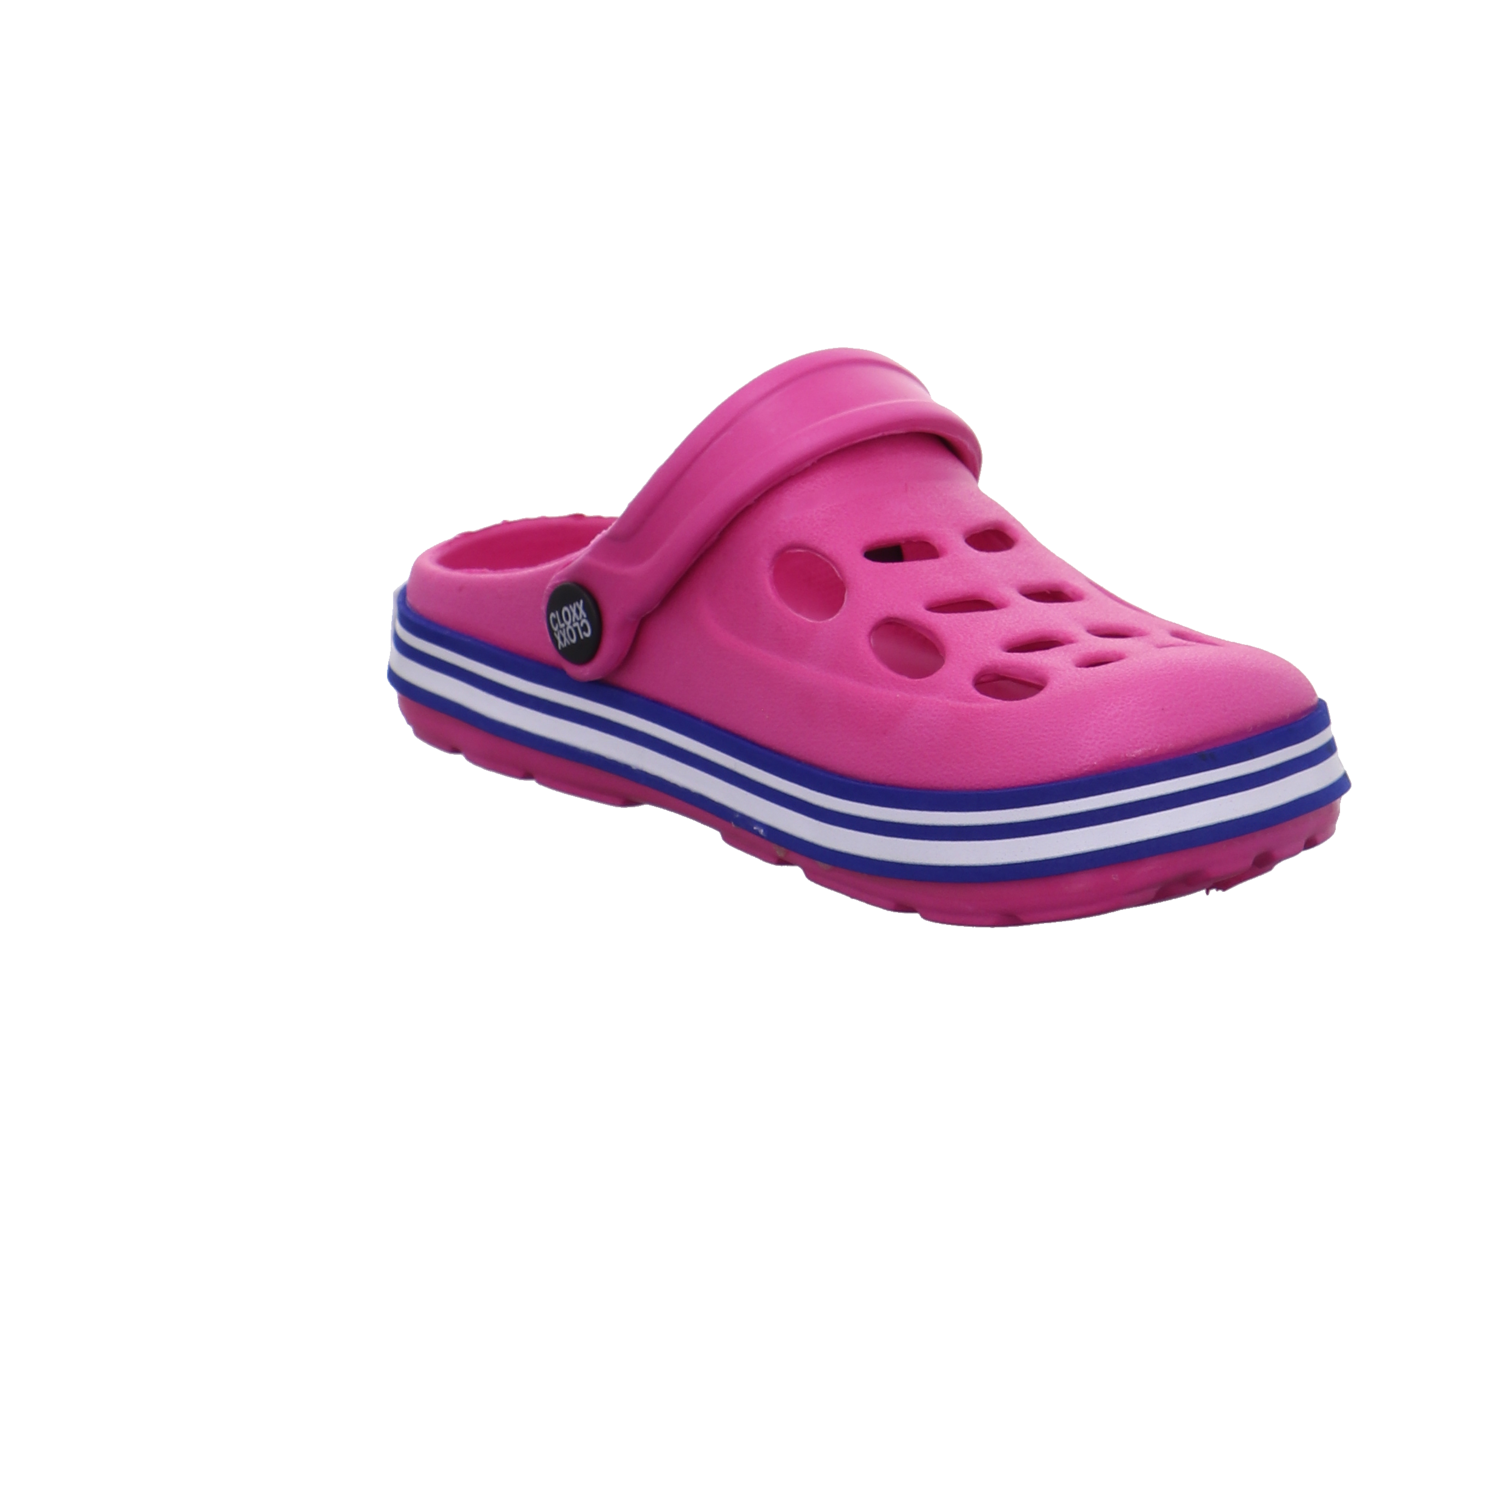 Cloxx Schuhe  pink Bild7